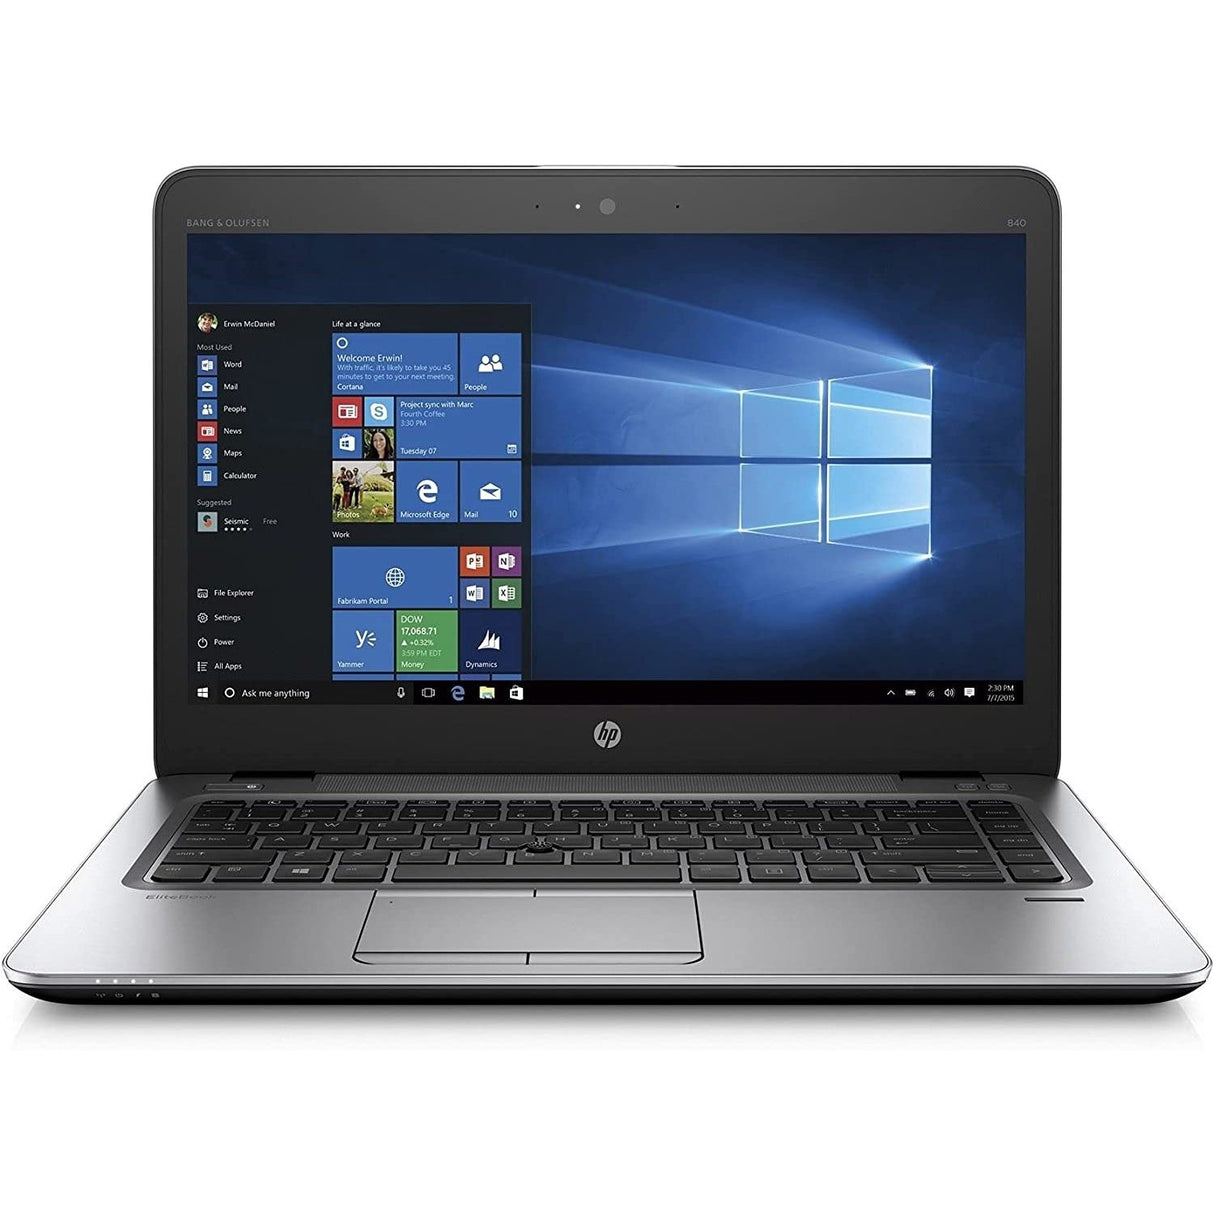 HP EliteBook 840 G3 i5 6th Gen 8GB 240GB SSD Windows 10 Pro 14" Display